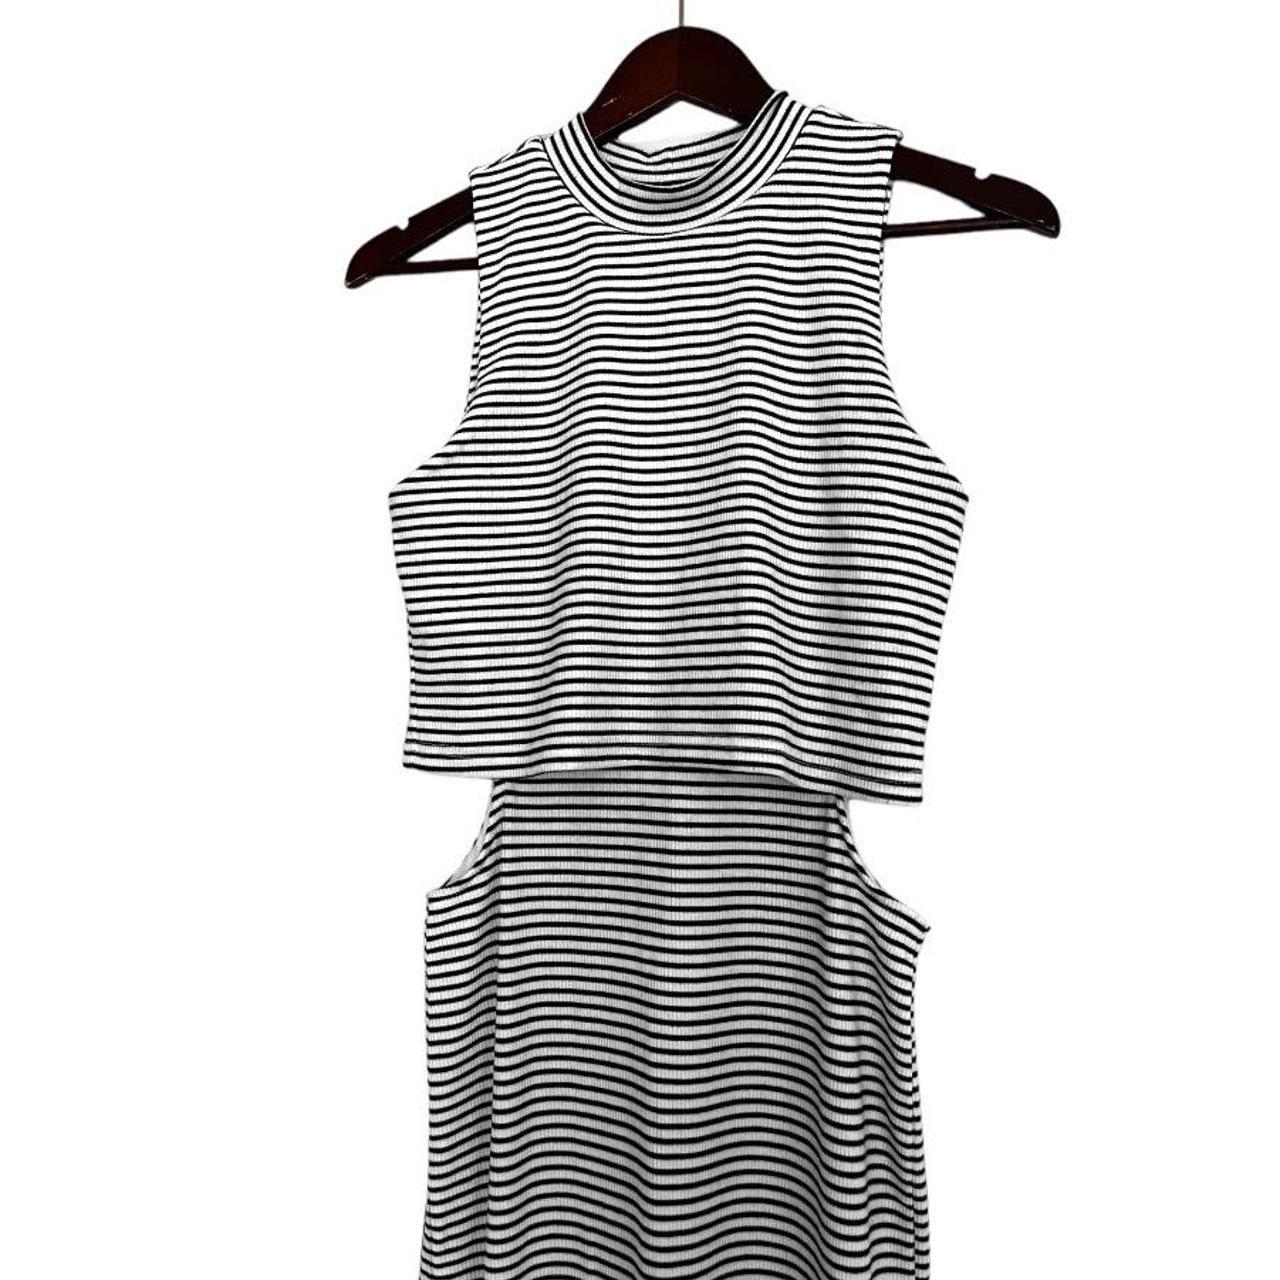 MINKPINK Stripe Cut Out Midi Dress